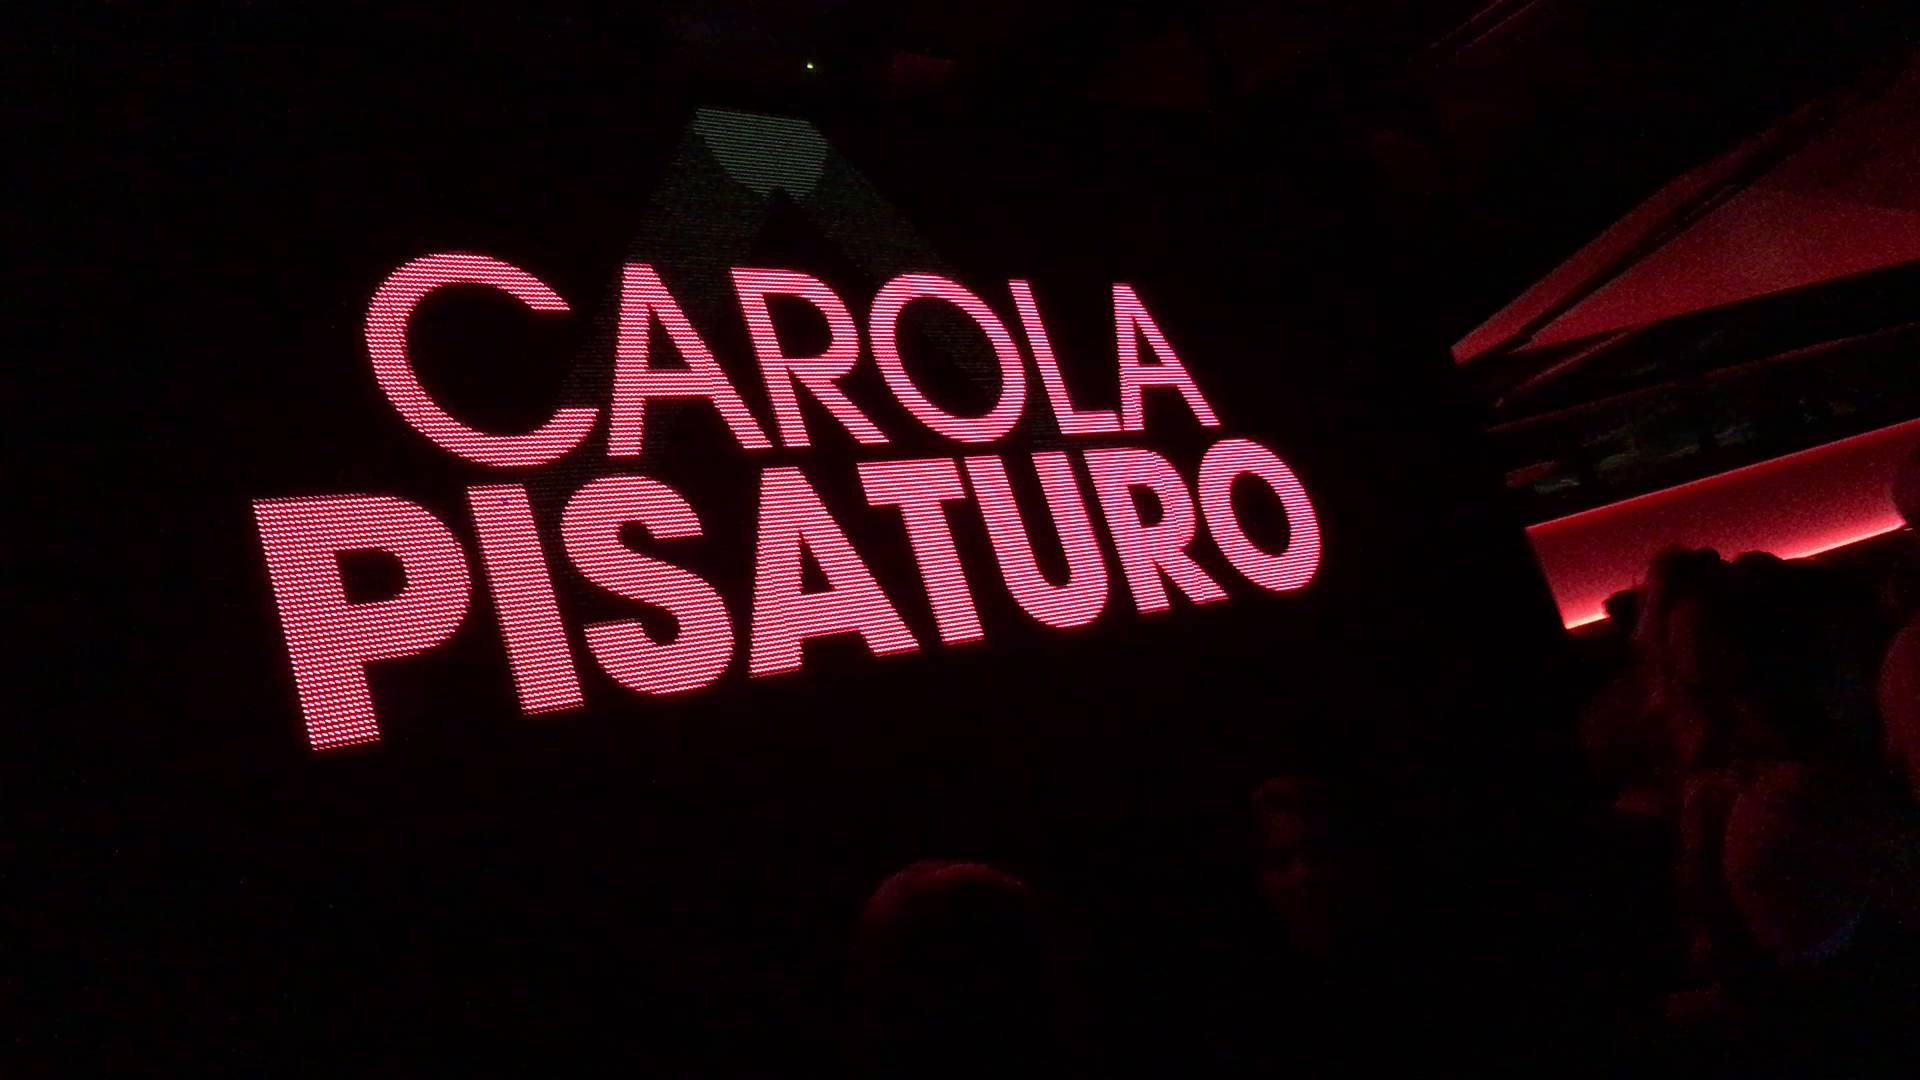 Carola Pisaturo